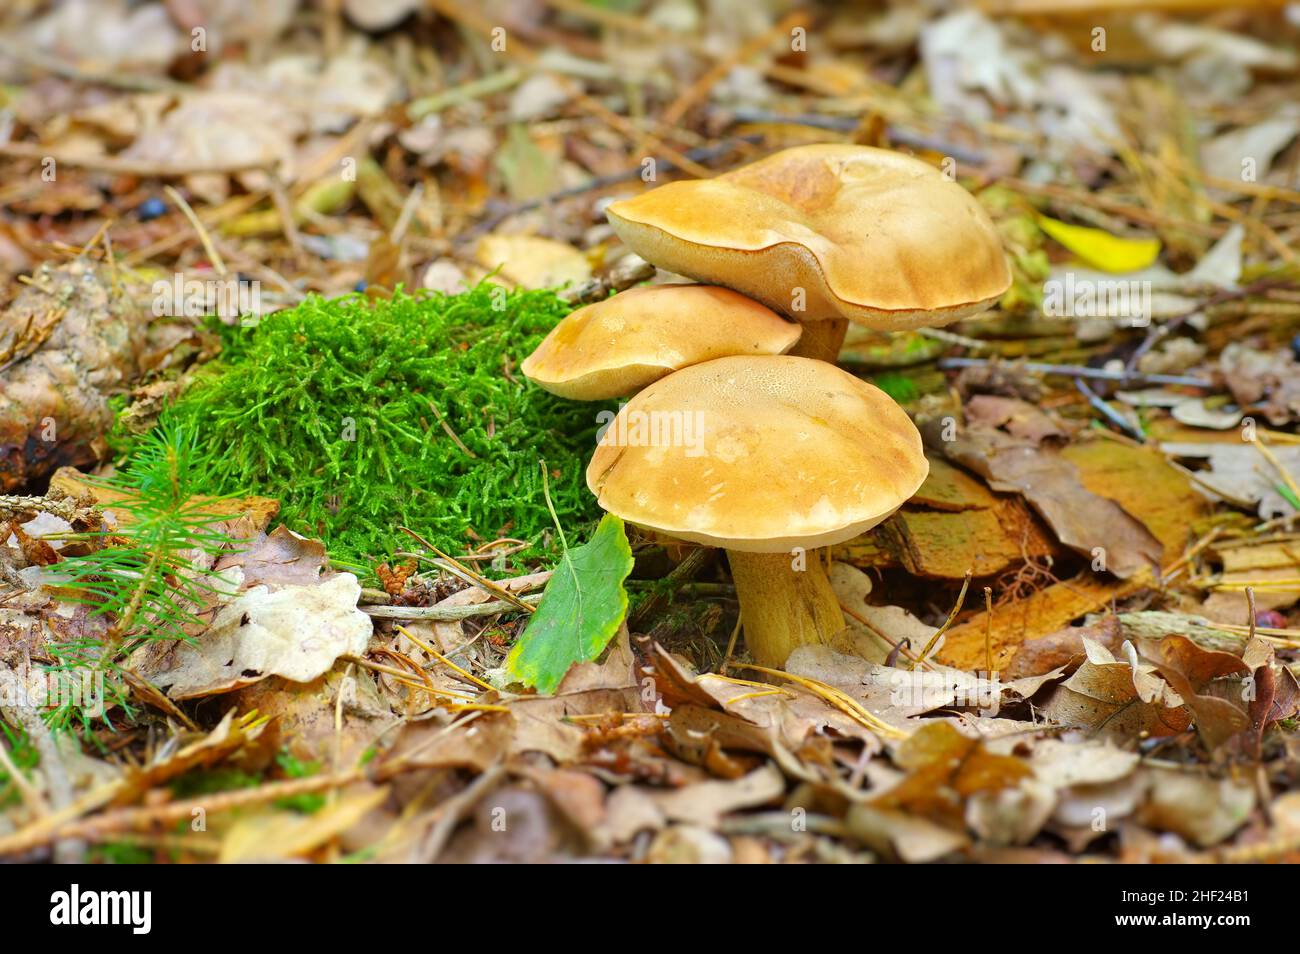 Wild mushroom in autumn forest on woodland floor Stock Photo